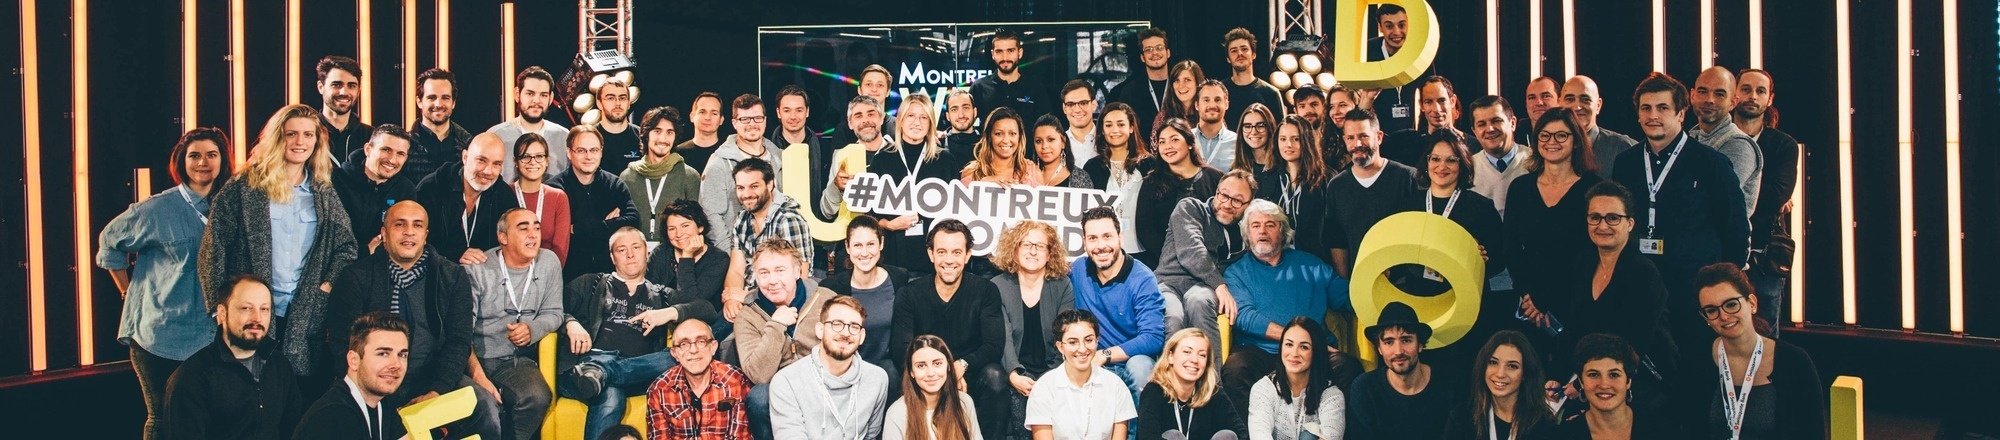 Montreux Comedy /  Groupe Grégoire Furrer Productions 